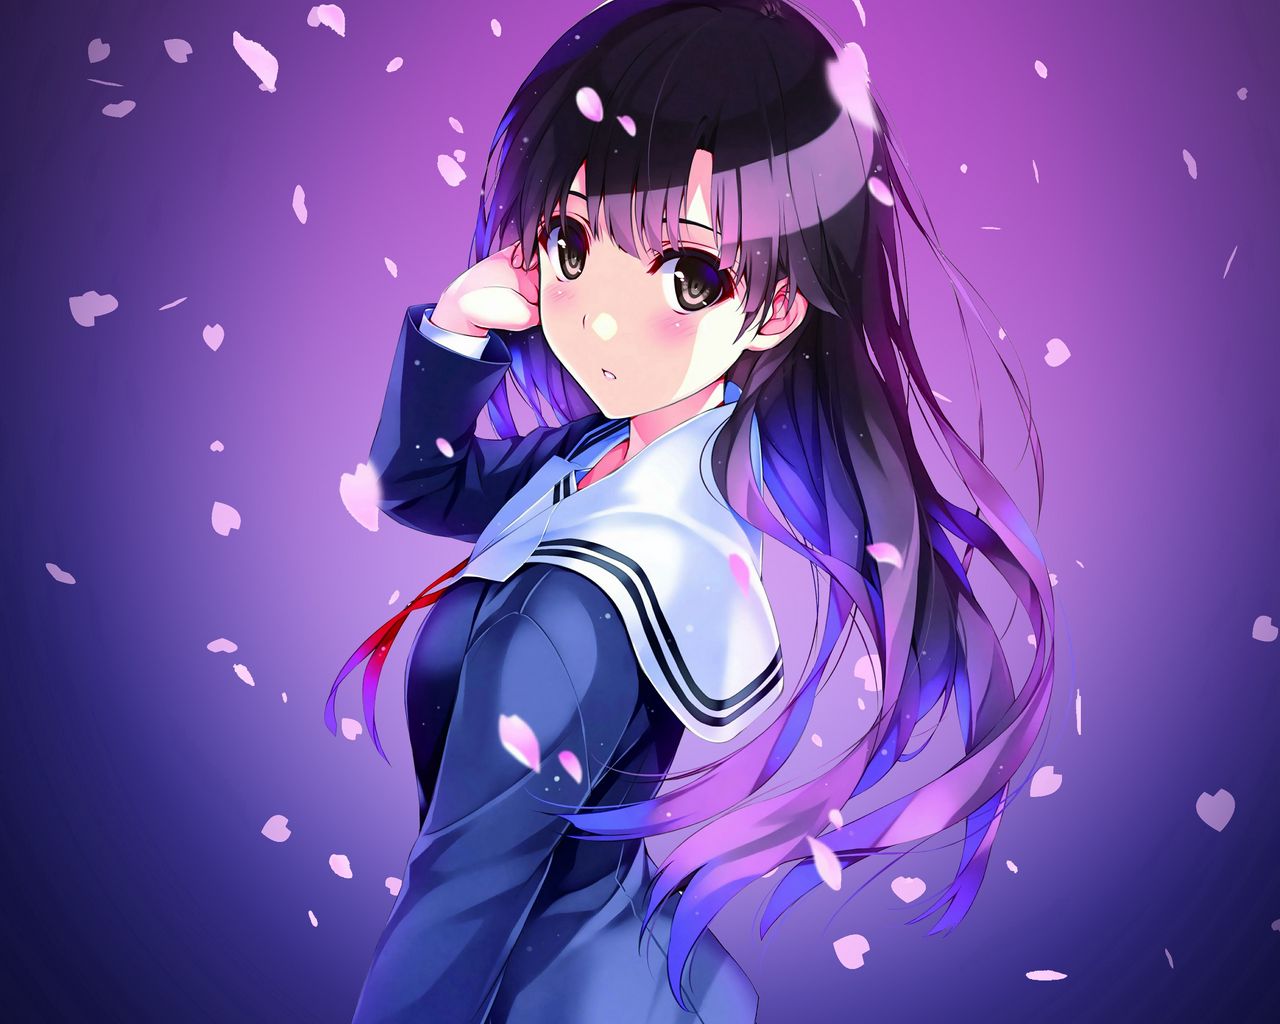 Download wallpaper 1280x1024 anime, schoolgirl, uniform, girl standard 5:4 HD background